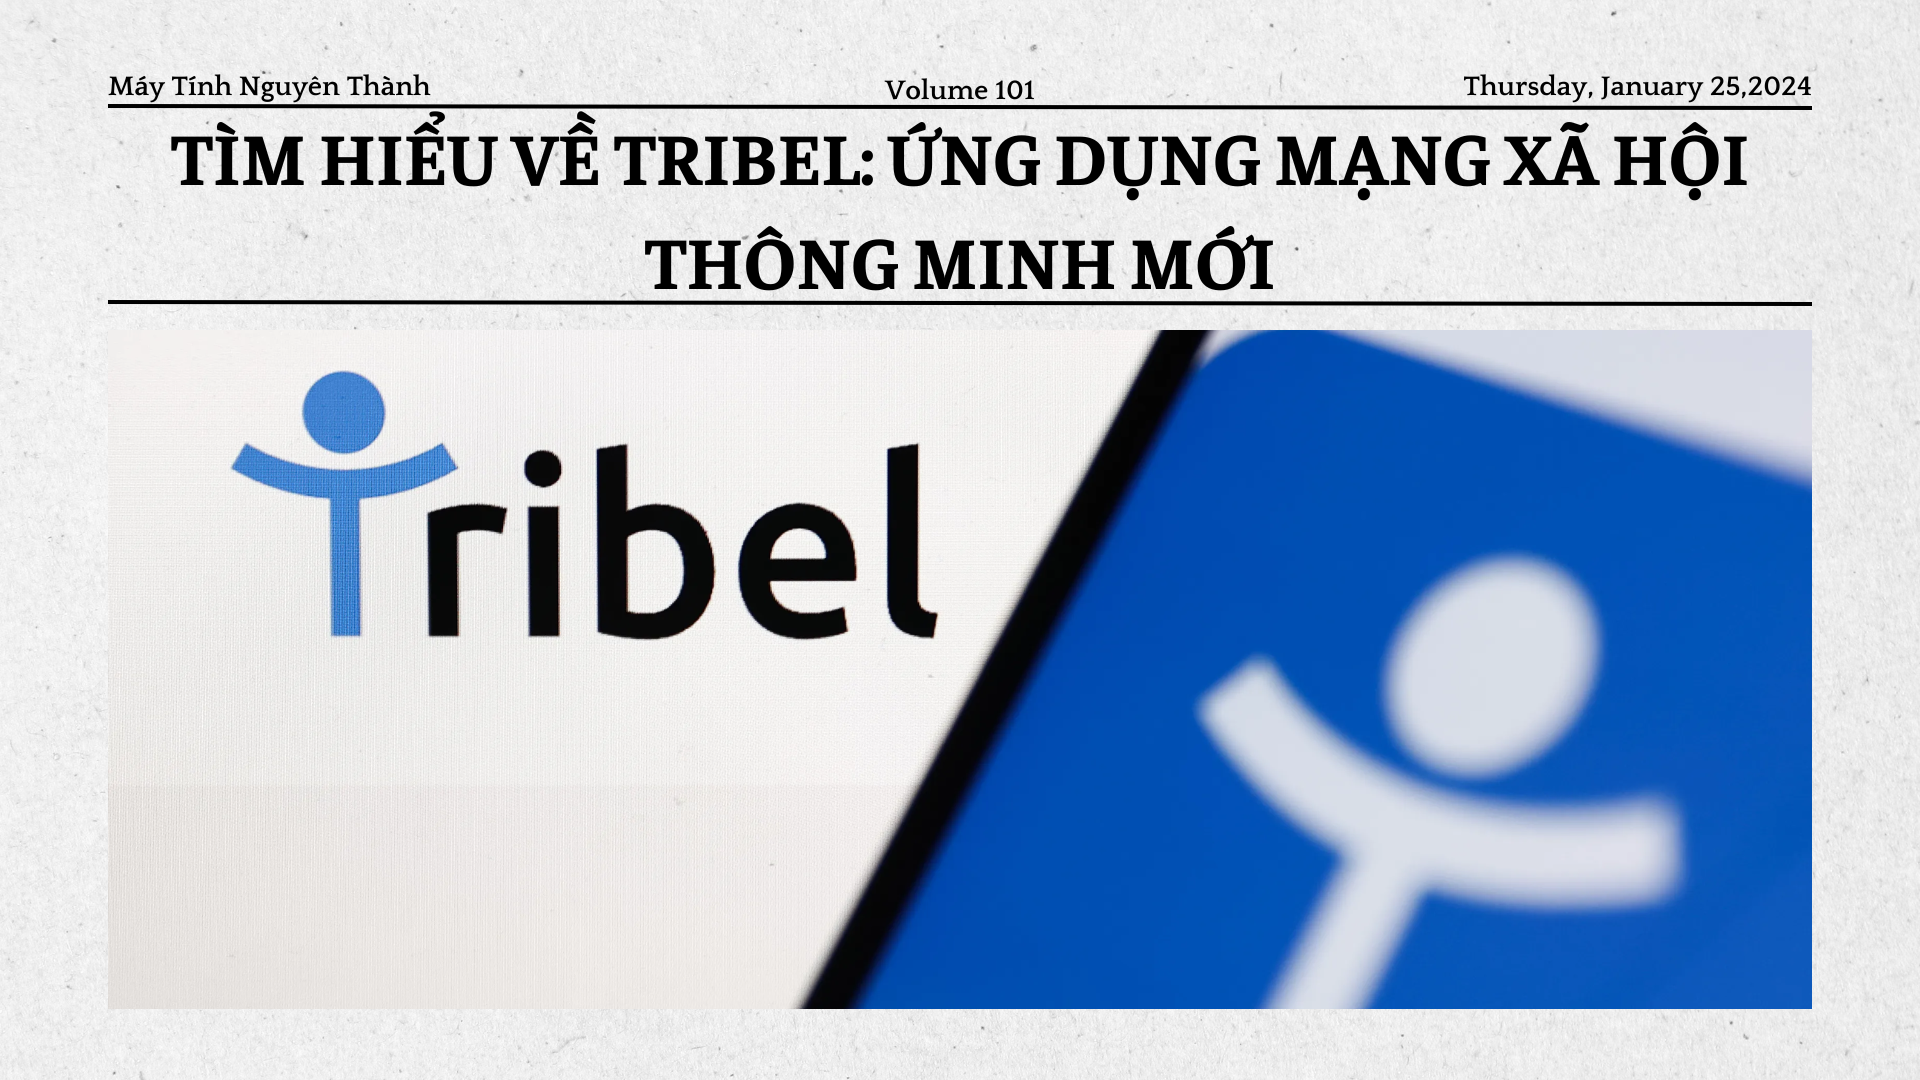 Tìm hiểu về Tribel: Ứng dụng mạng xã hội thông minh mới